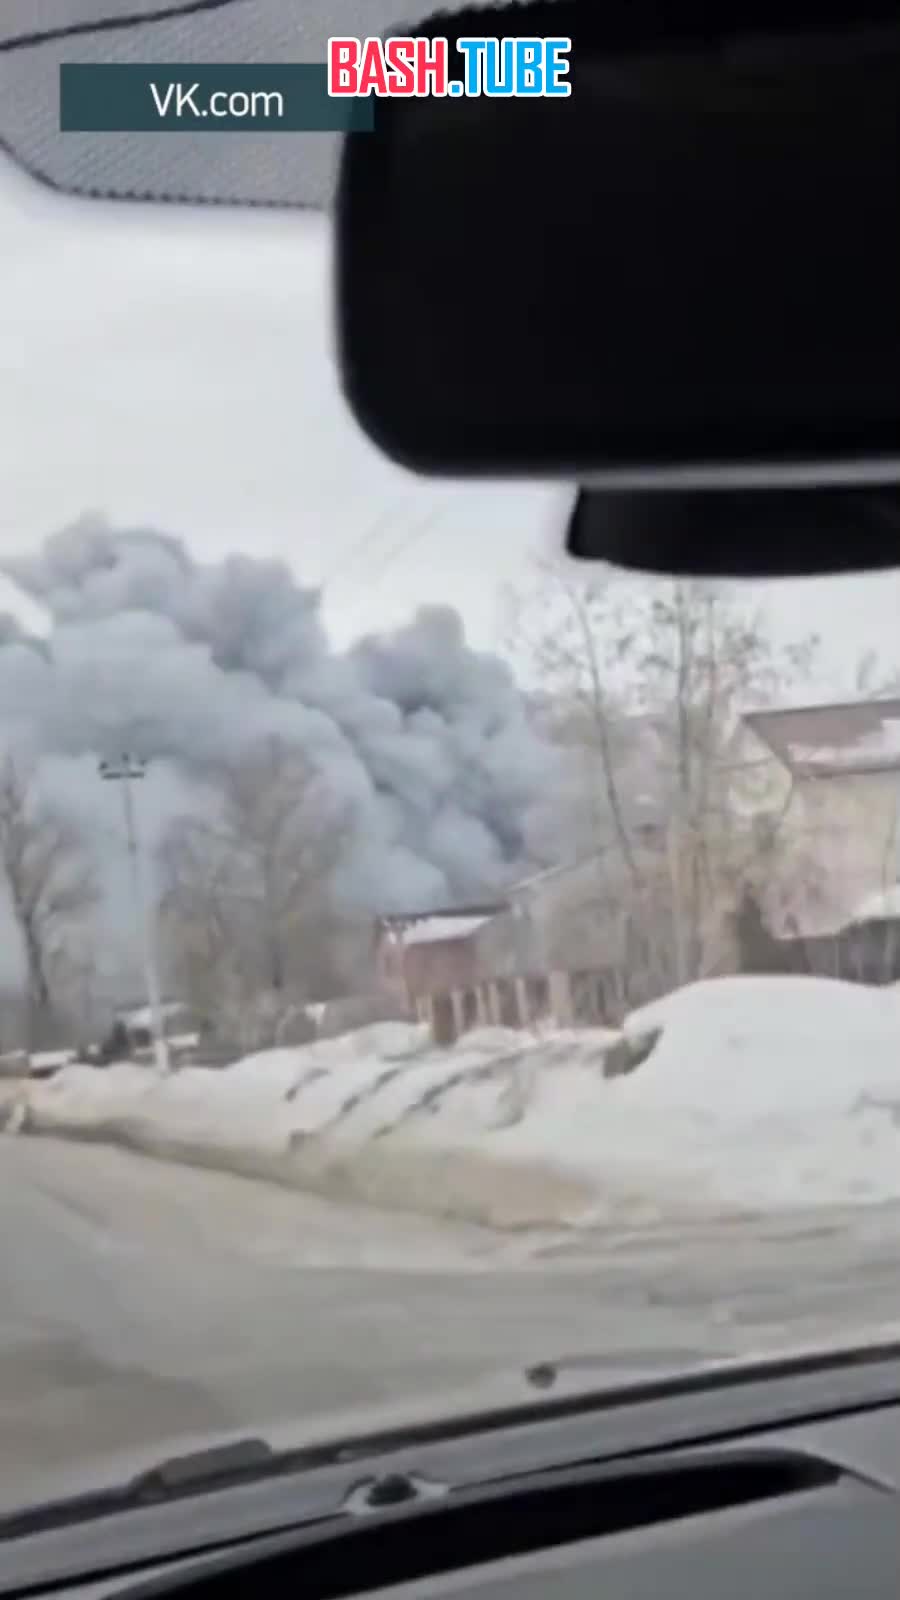 ⁣ Сильный пожар в Раменском округе Подмосковья - огонь охватил 700 квадратных метров